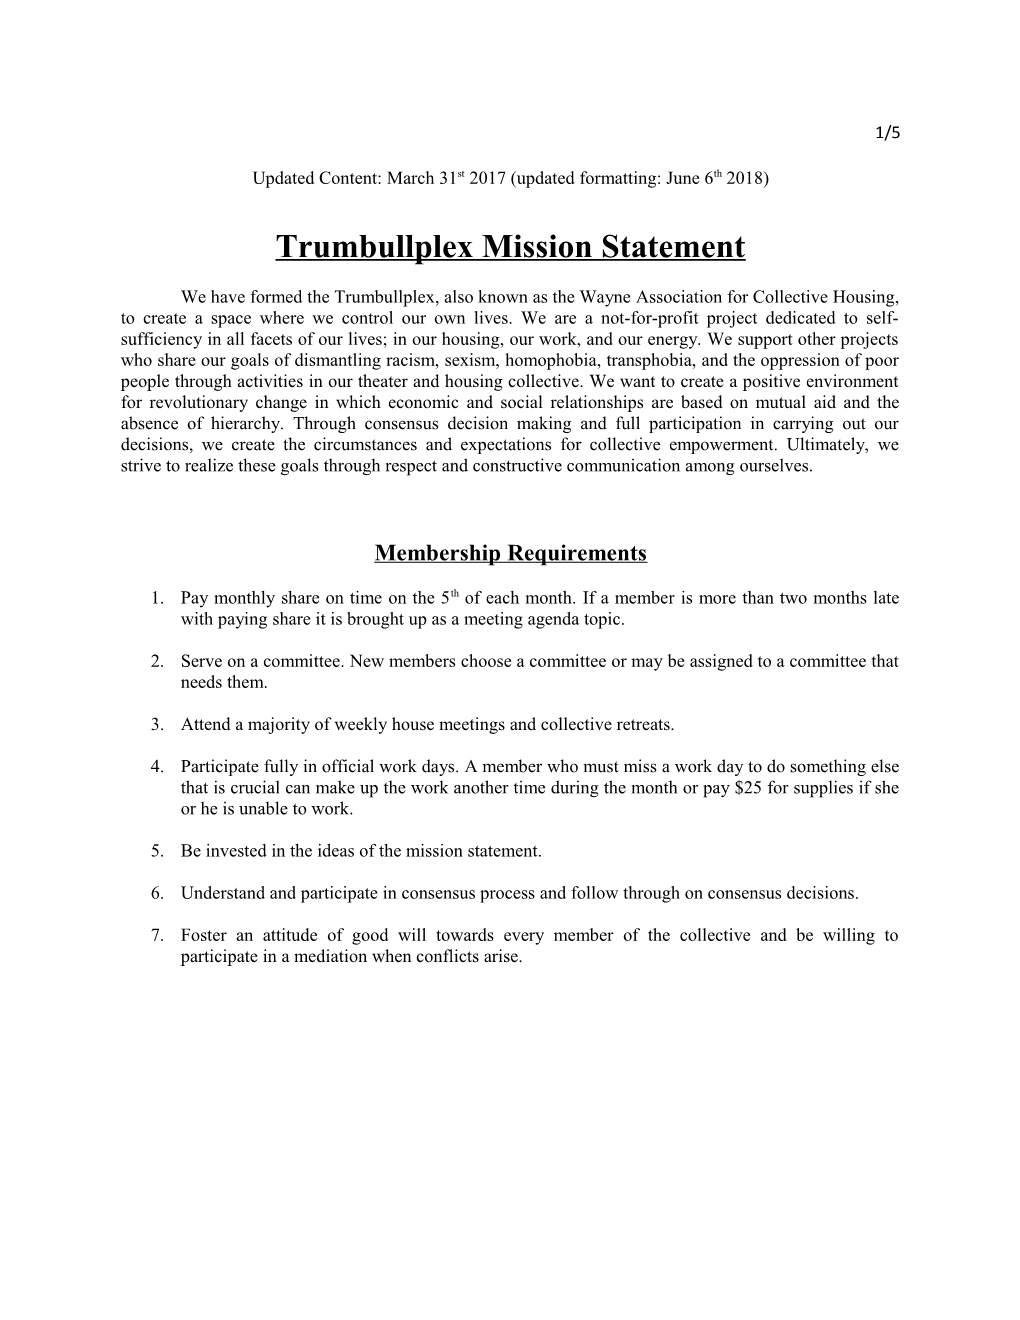 Trumbullplex Mission Statement